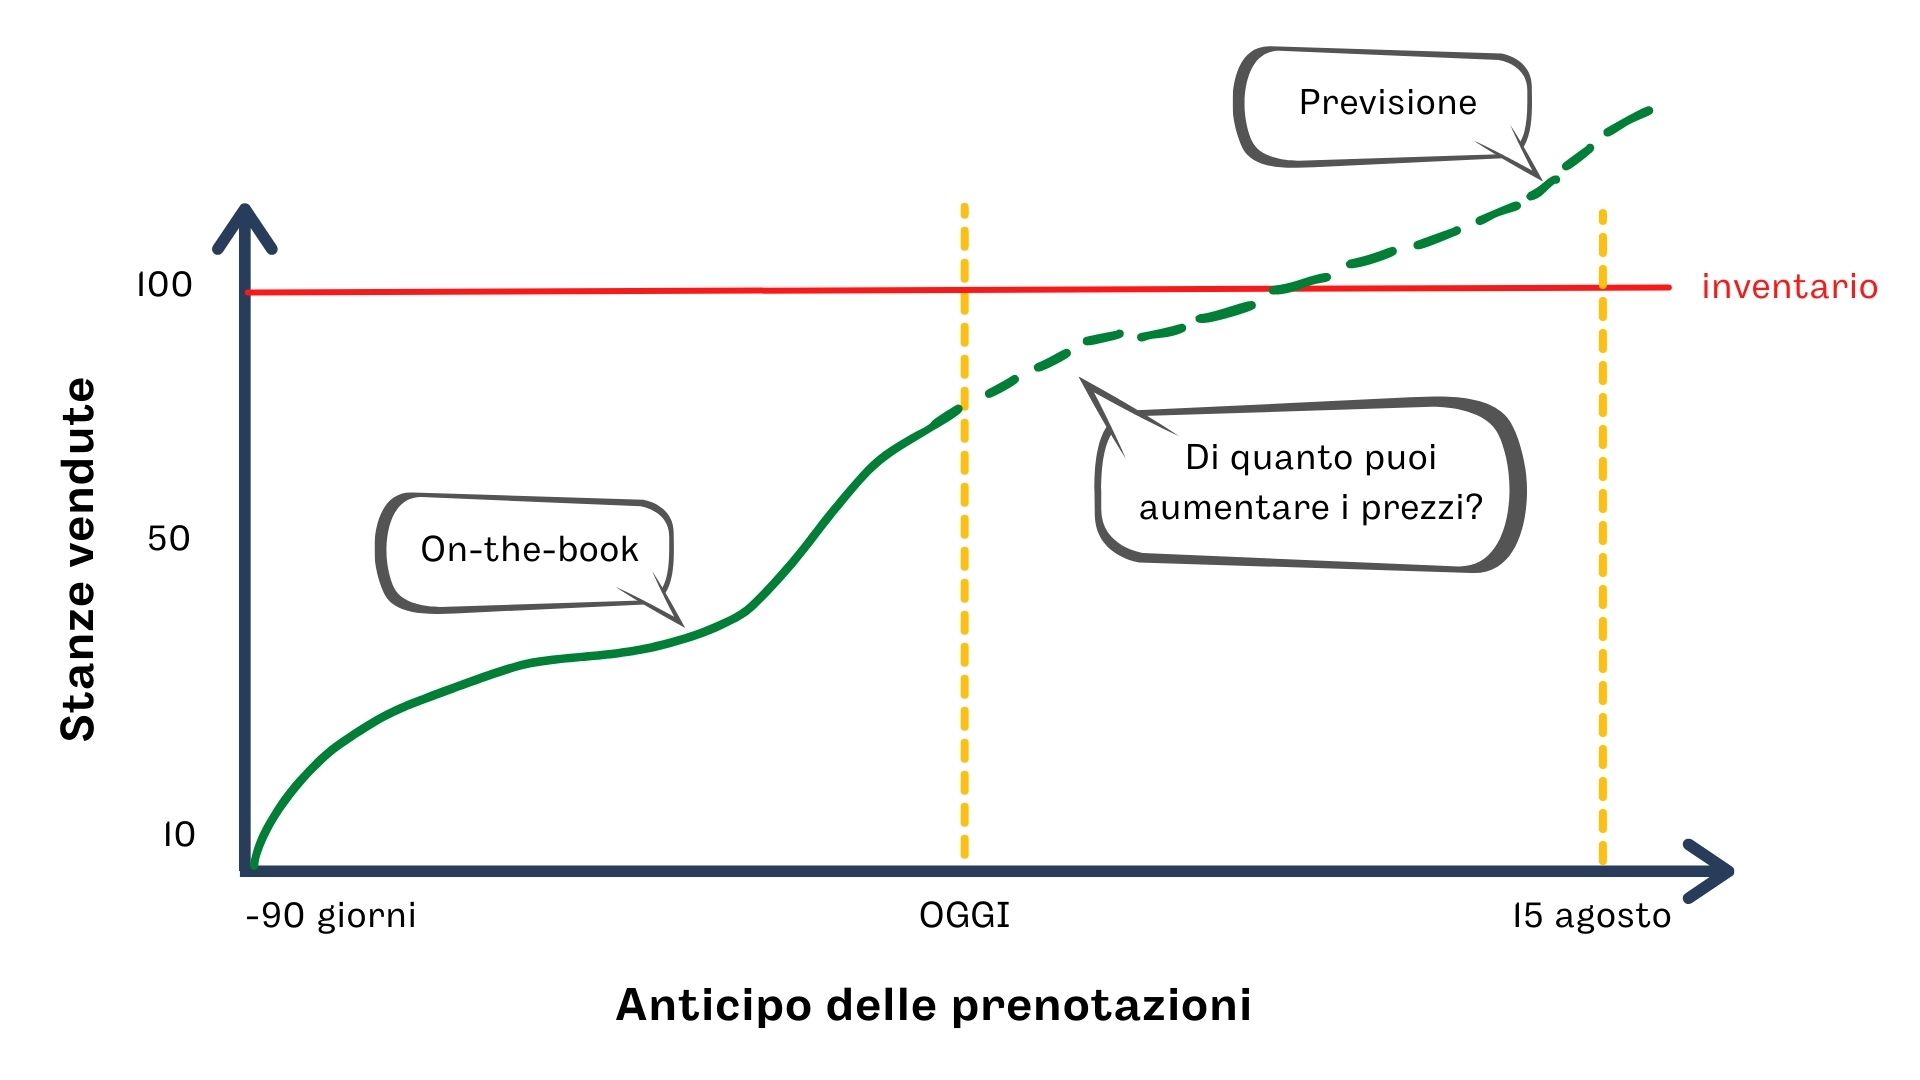 Grafico rappresentativo del processo per la revisione dei prezzi a partire dall'on-the-book ("OTB").